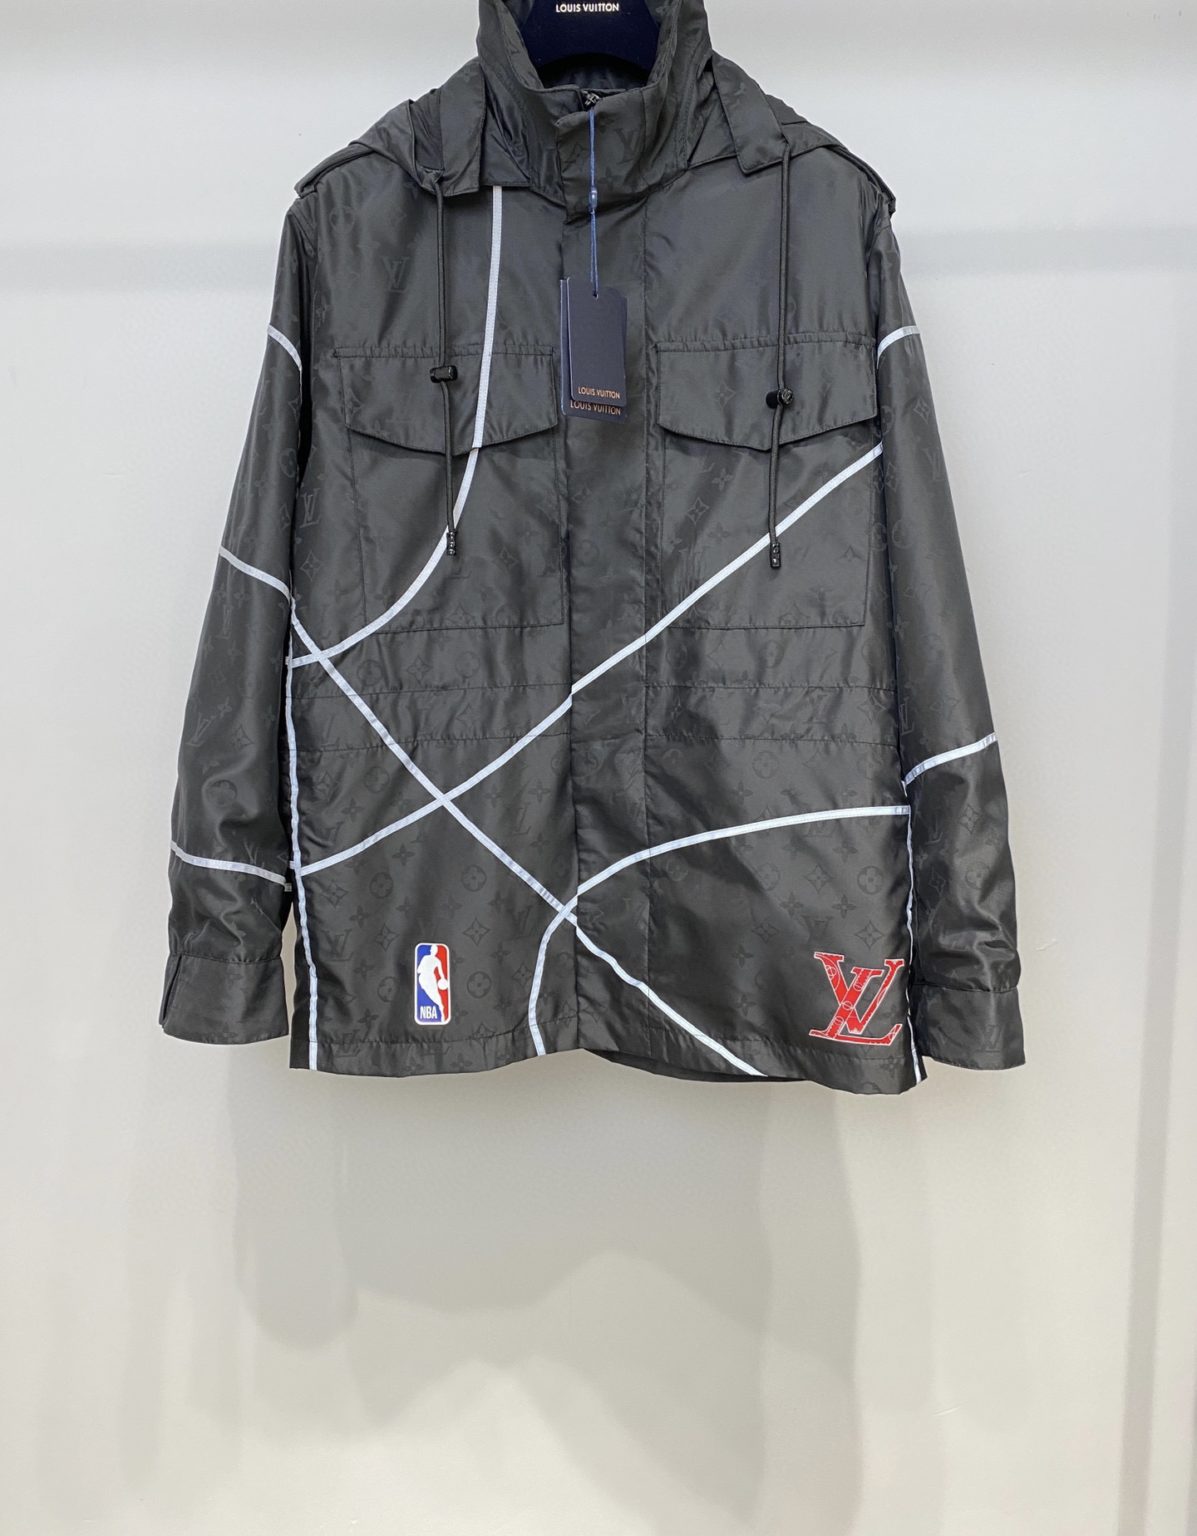 Louis Vuitton X Nba Basketball Short-sleeve Shirt Template | Paul Smith